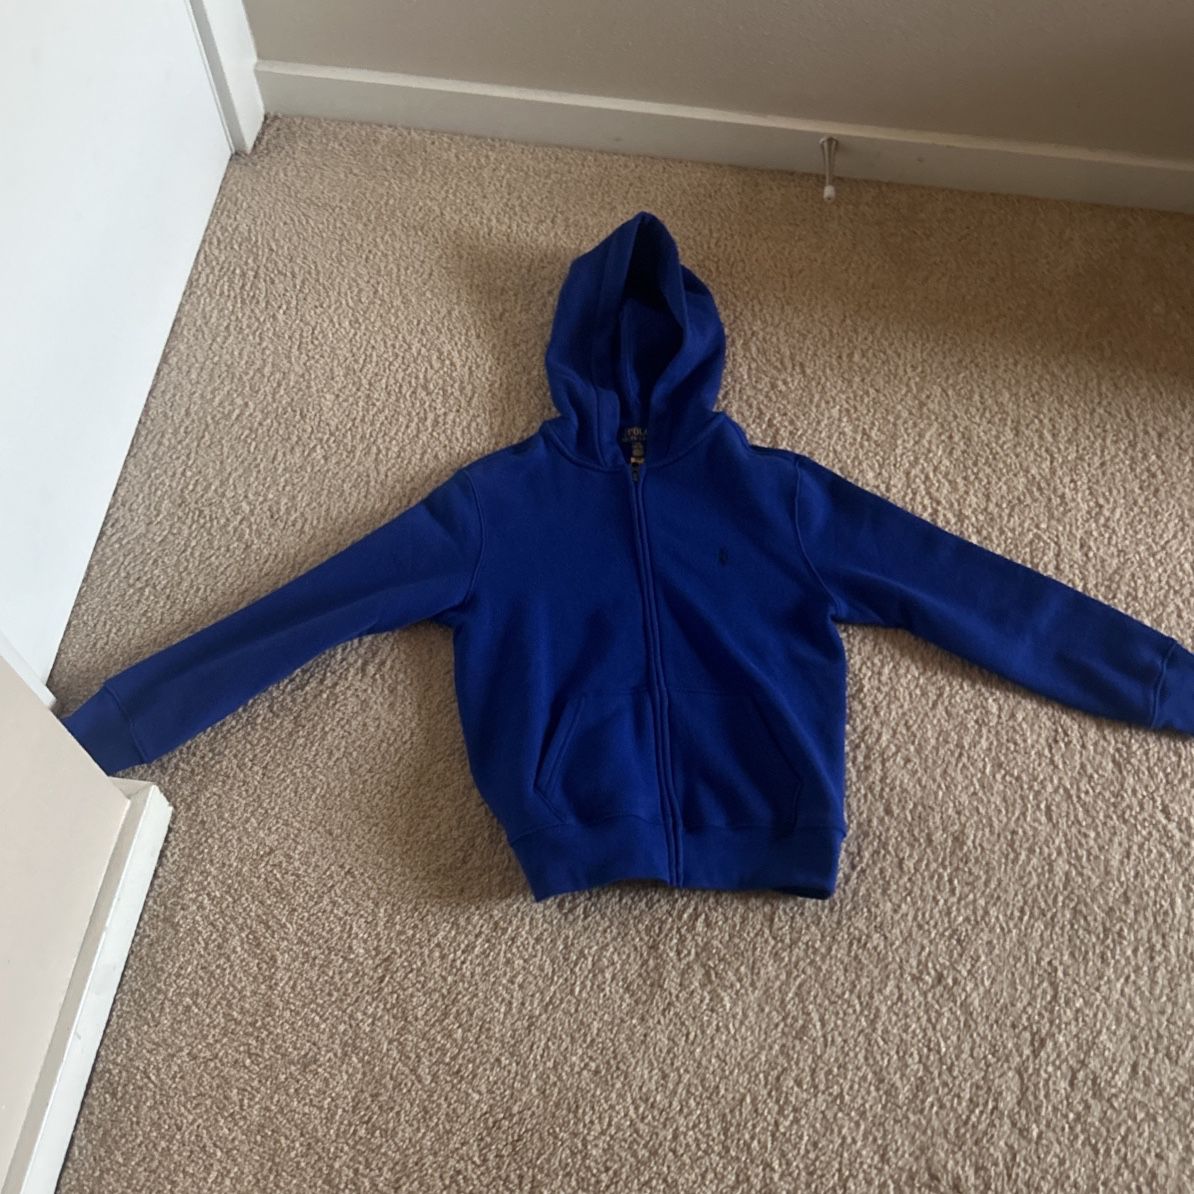 Polo Zip up jacket (Blue) Size Large (14-16) youth